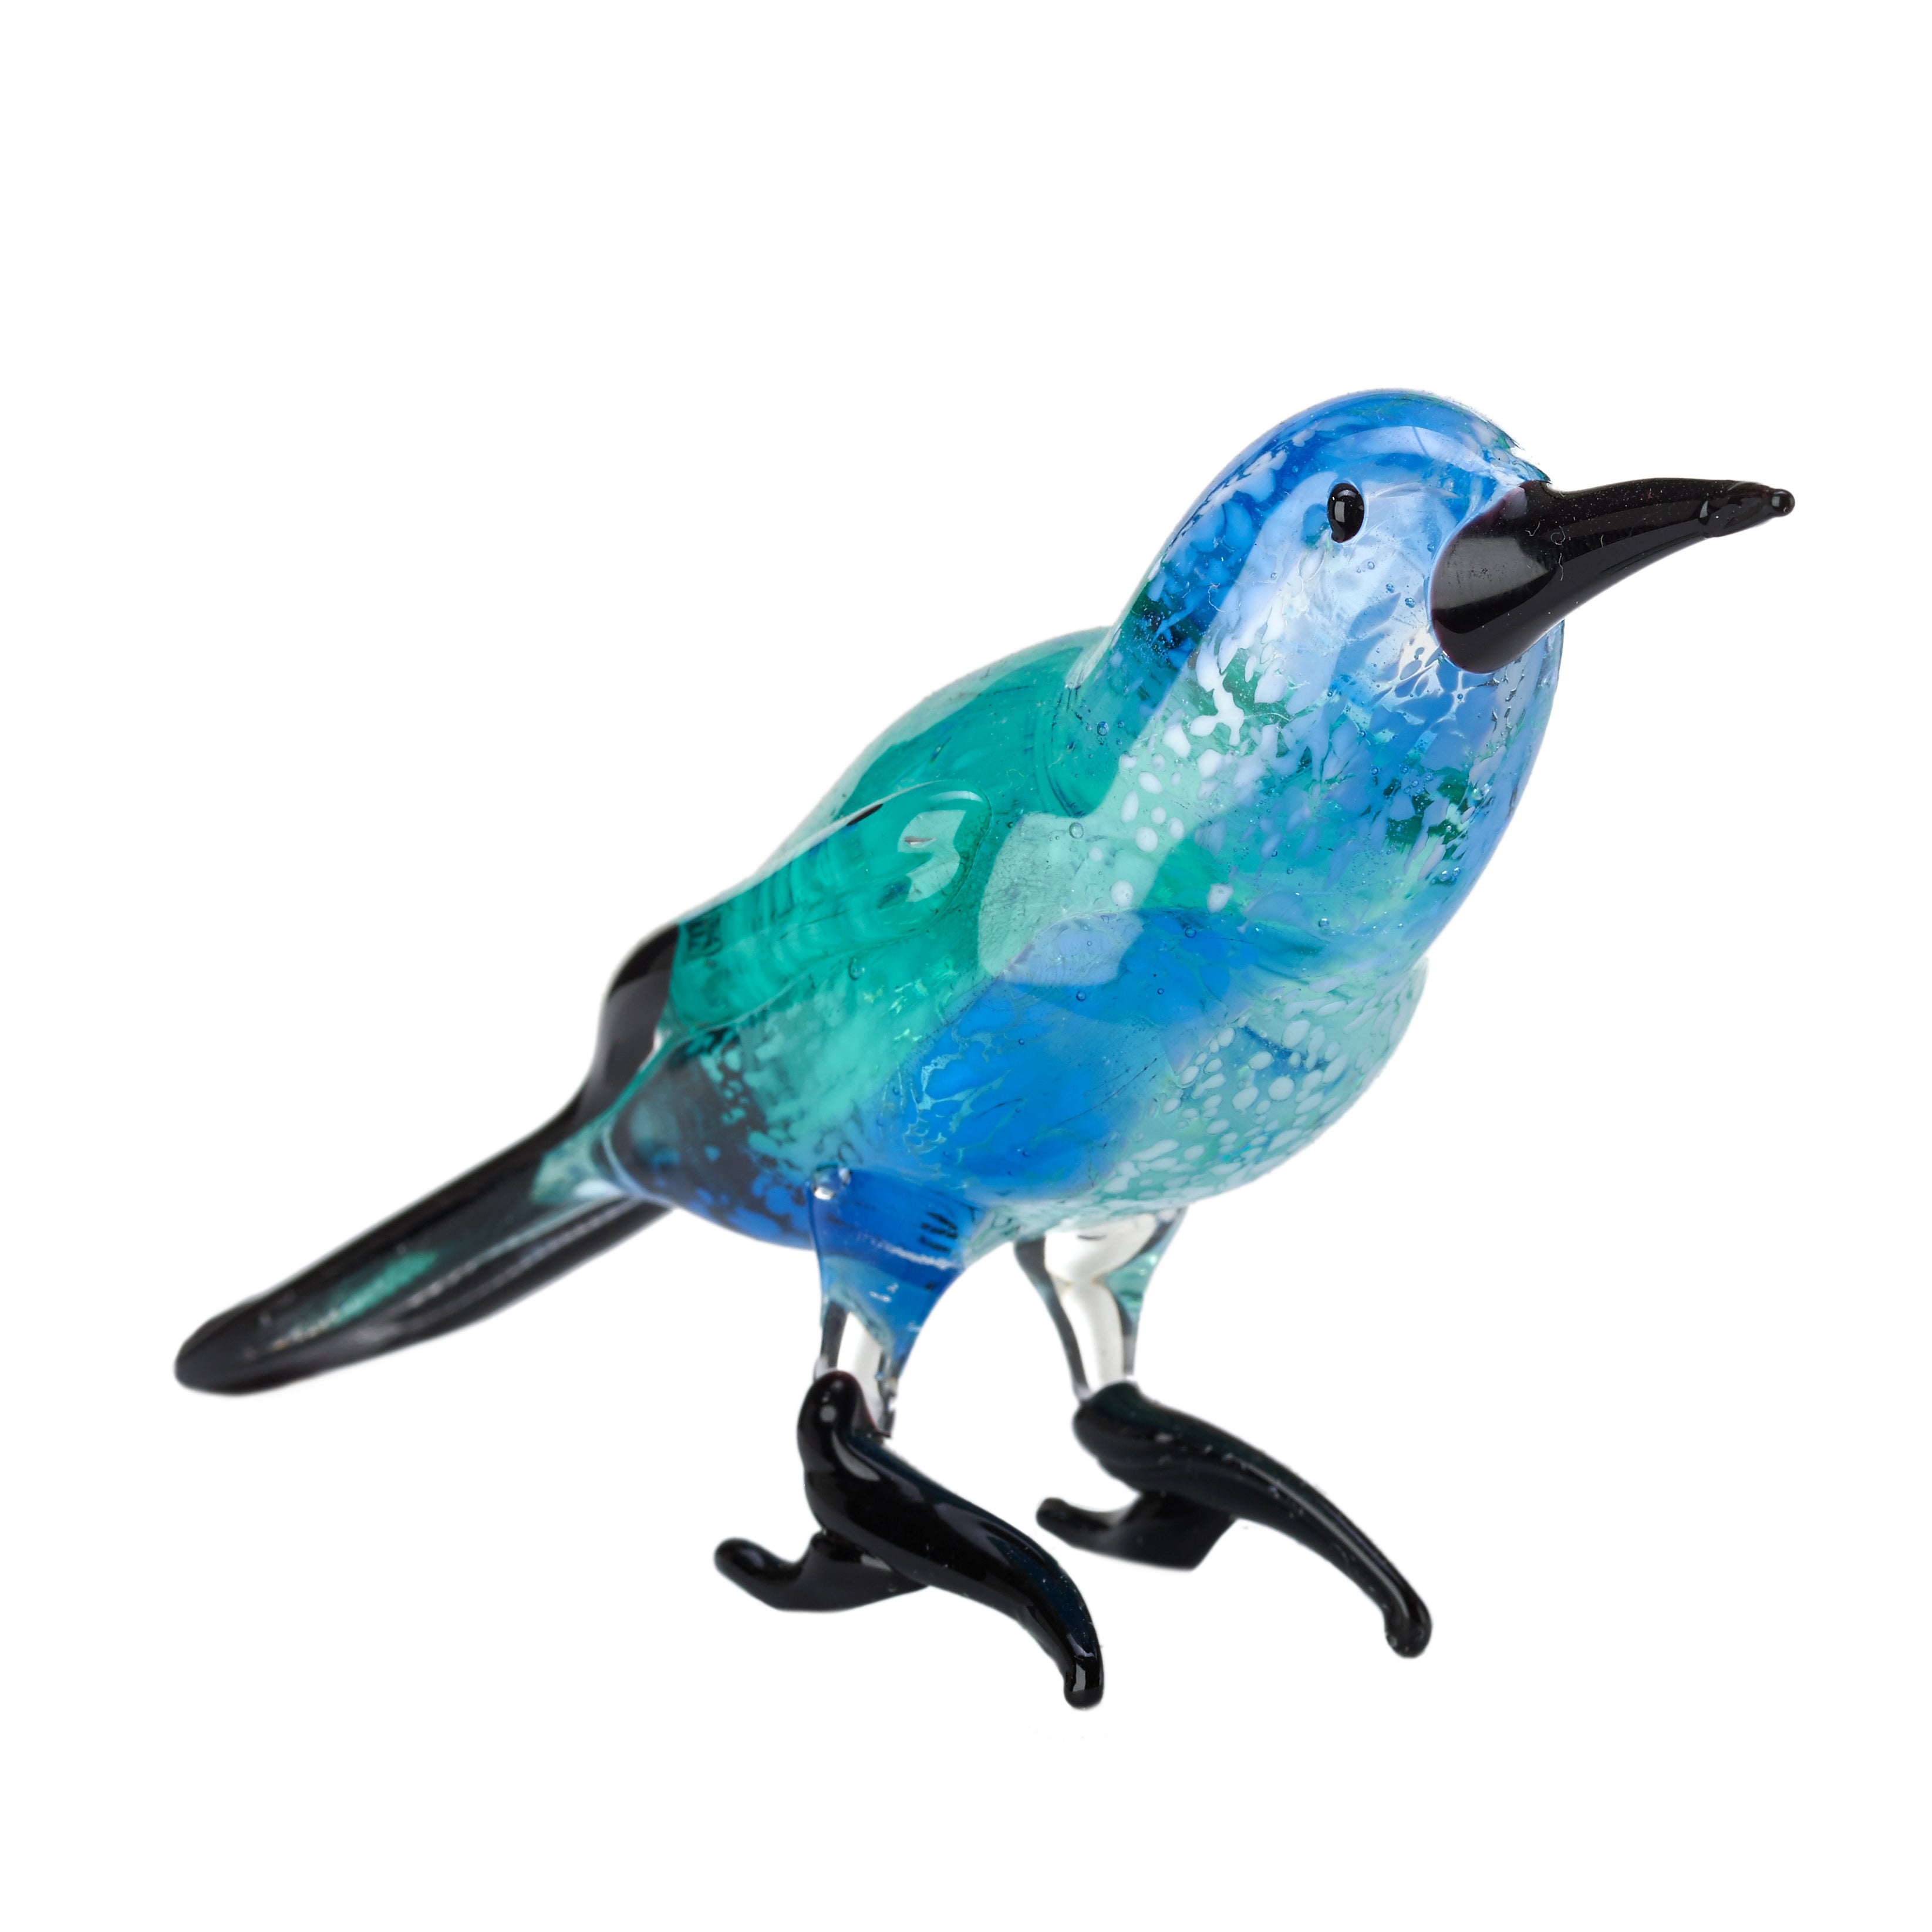 Zestaw dekoracji PARADISE BIRDS kolorowy Pols Potten    Eye on Design